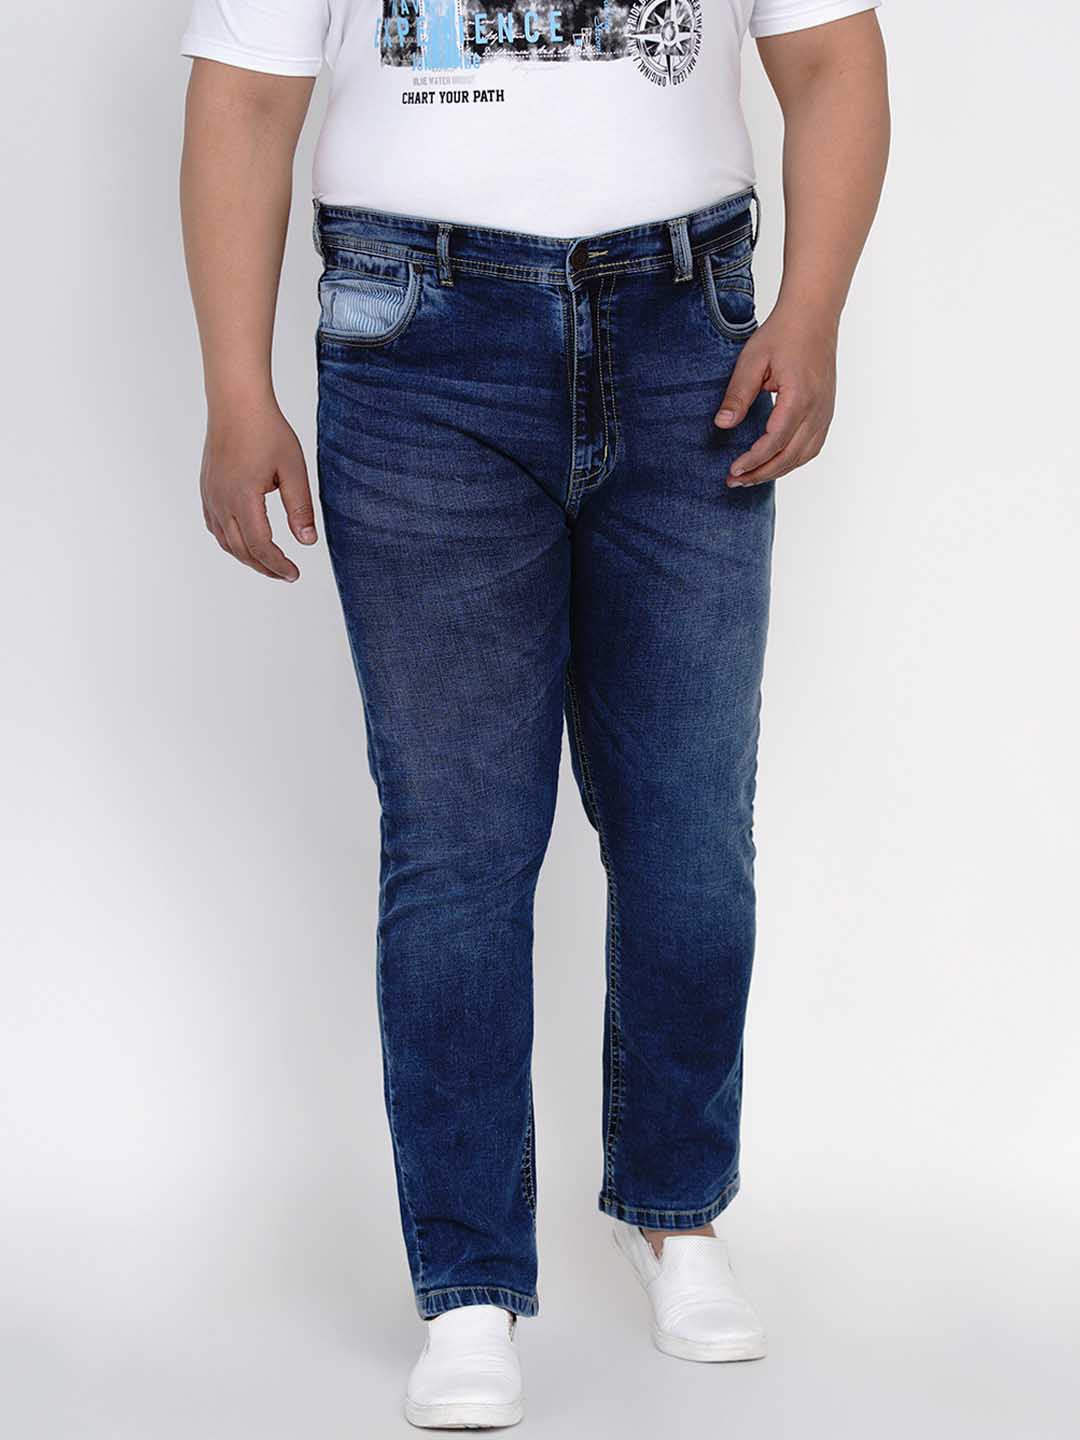 bottomwear/jeans/JPJ12126/jpj12126-1.jpg